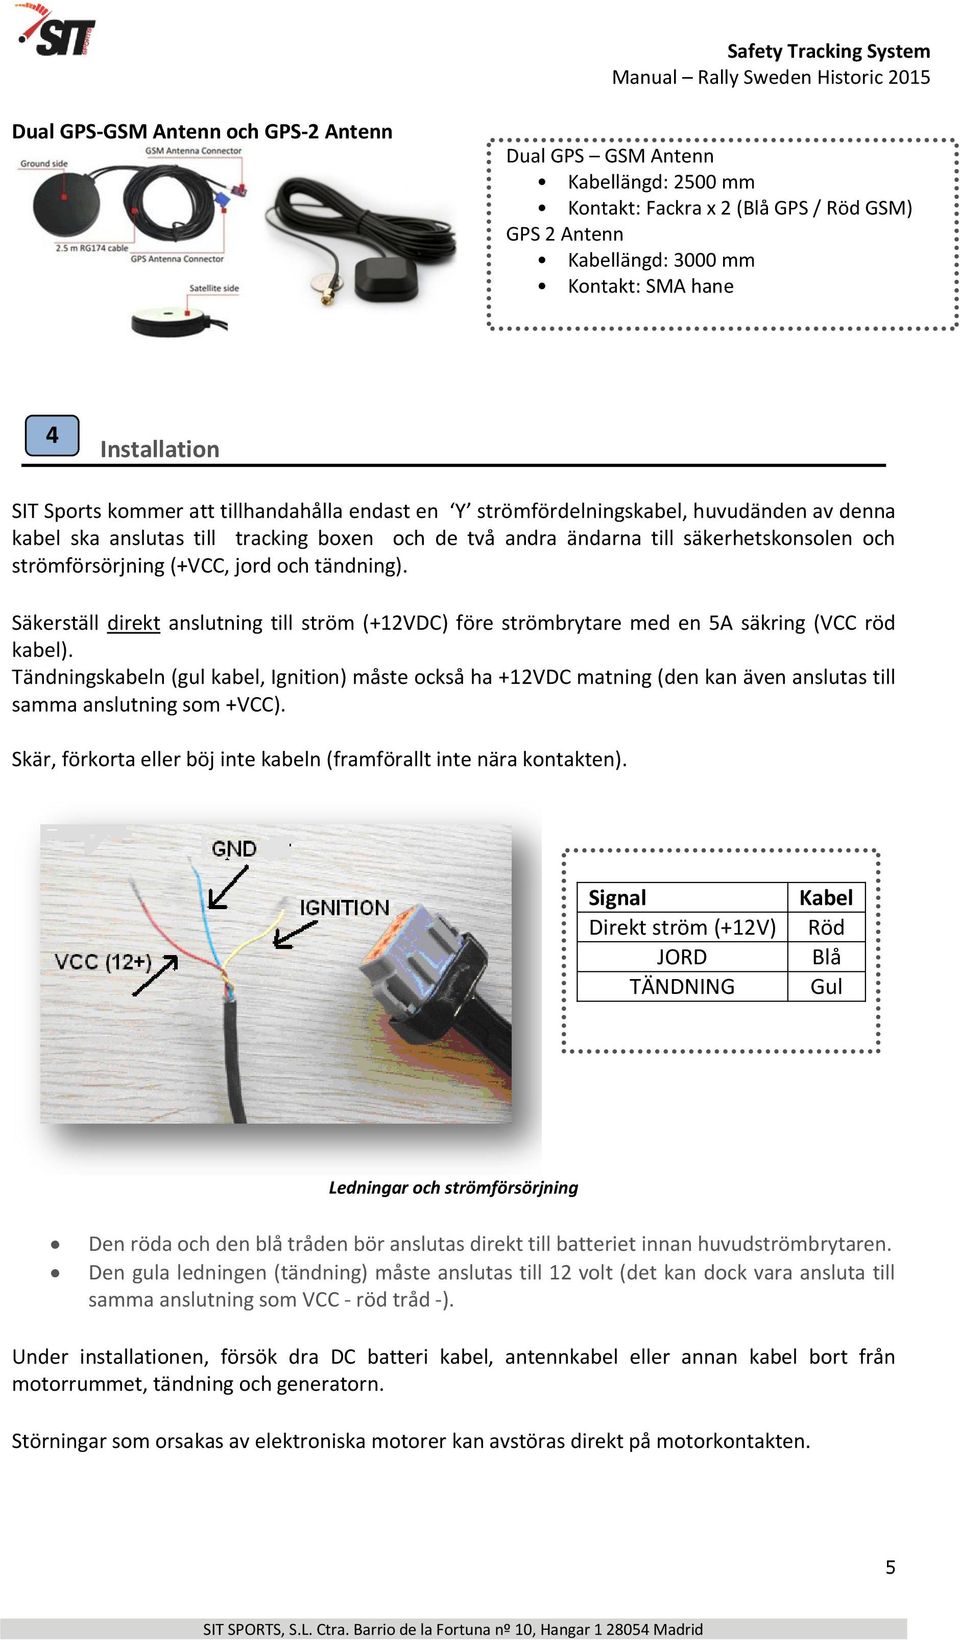 jord och tändning). Säkerställ direkt anslutning till ström (+12VDC) före strömbrytare med en 5A säkring (VCC röd kabel).